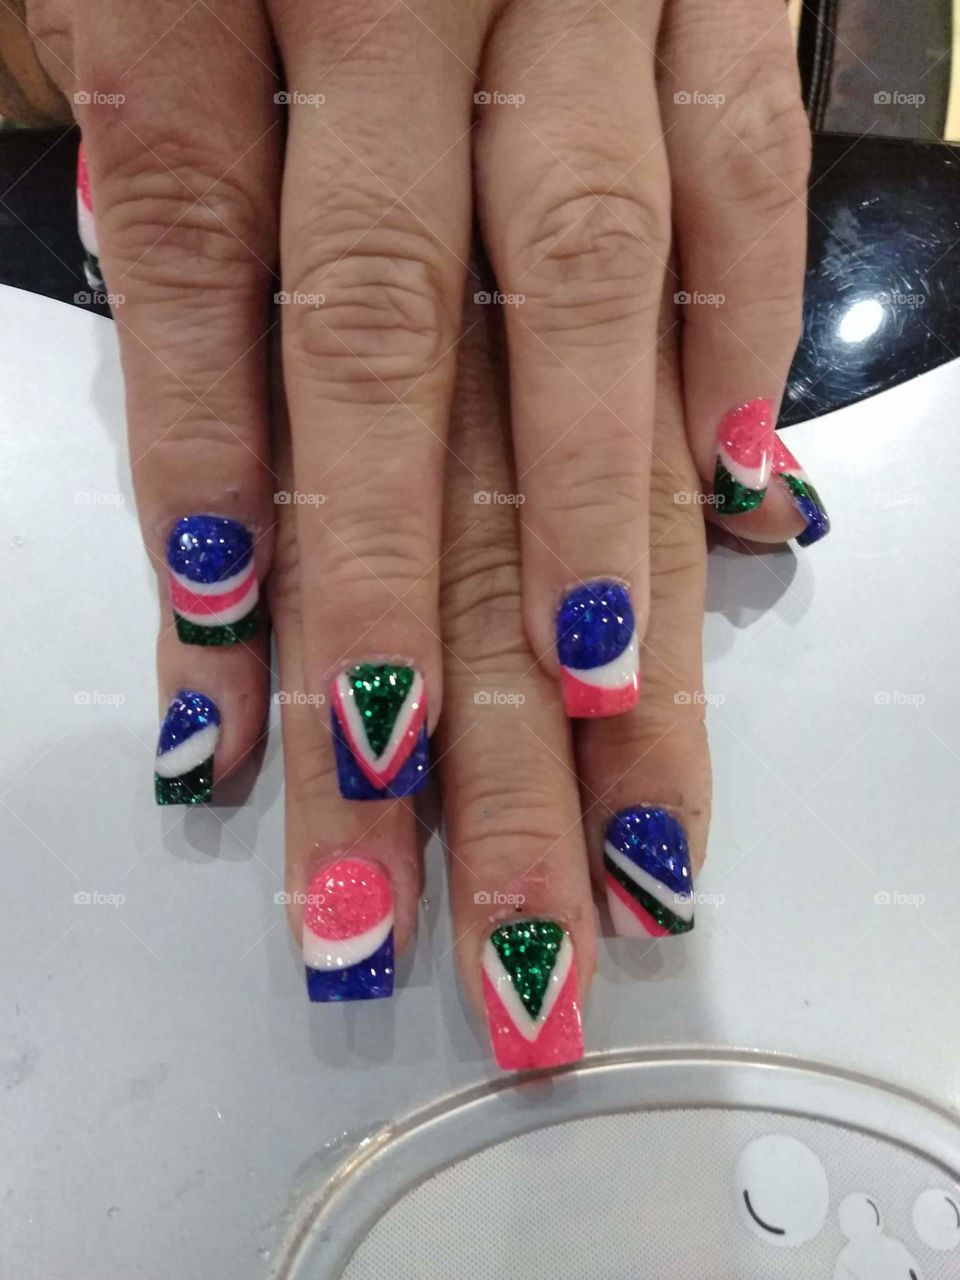 nice nails